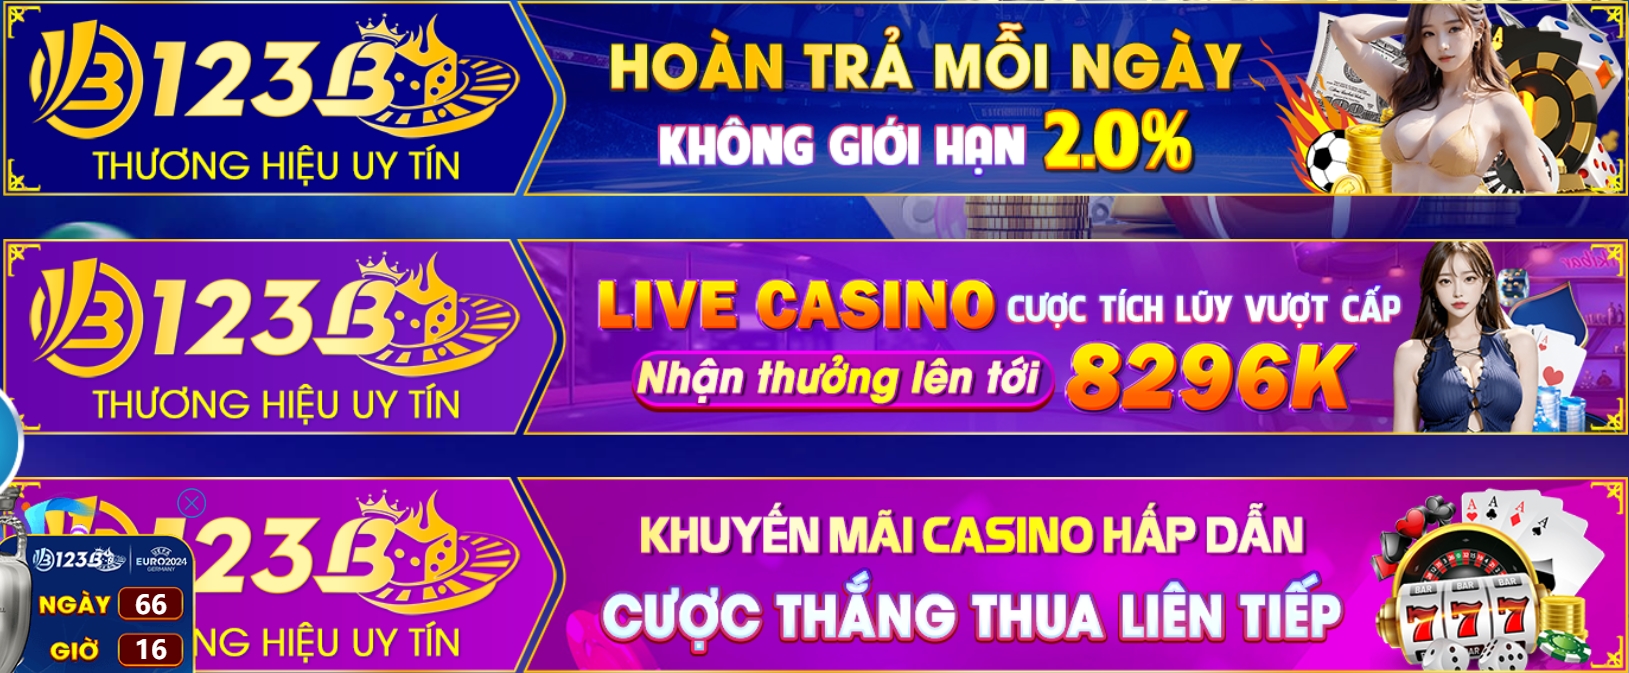 Có các chương trình nào tại casino online 123b?